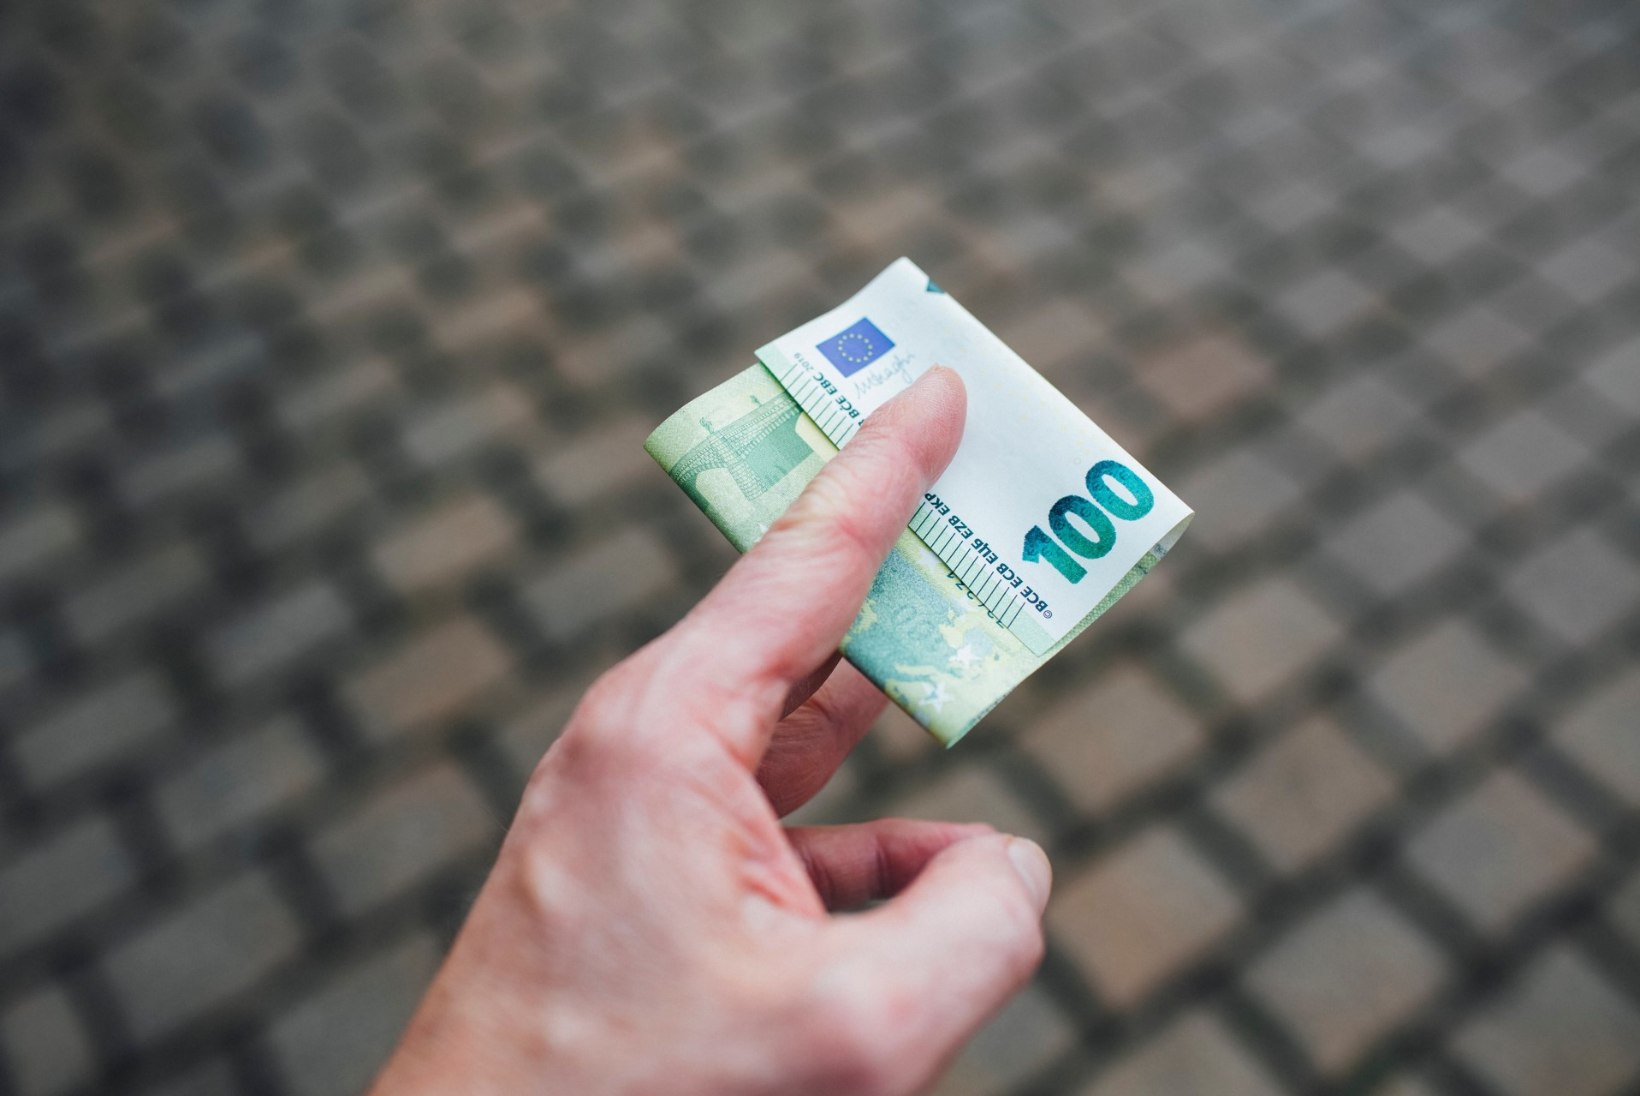 Eesti inimesed arutlevad: miks ja kuidas teenid palgale lisa?